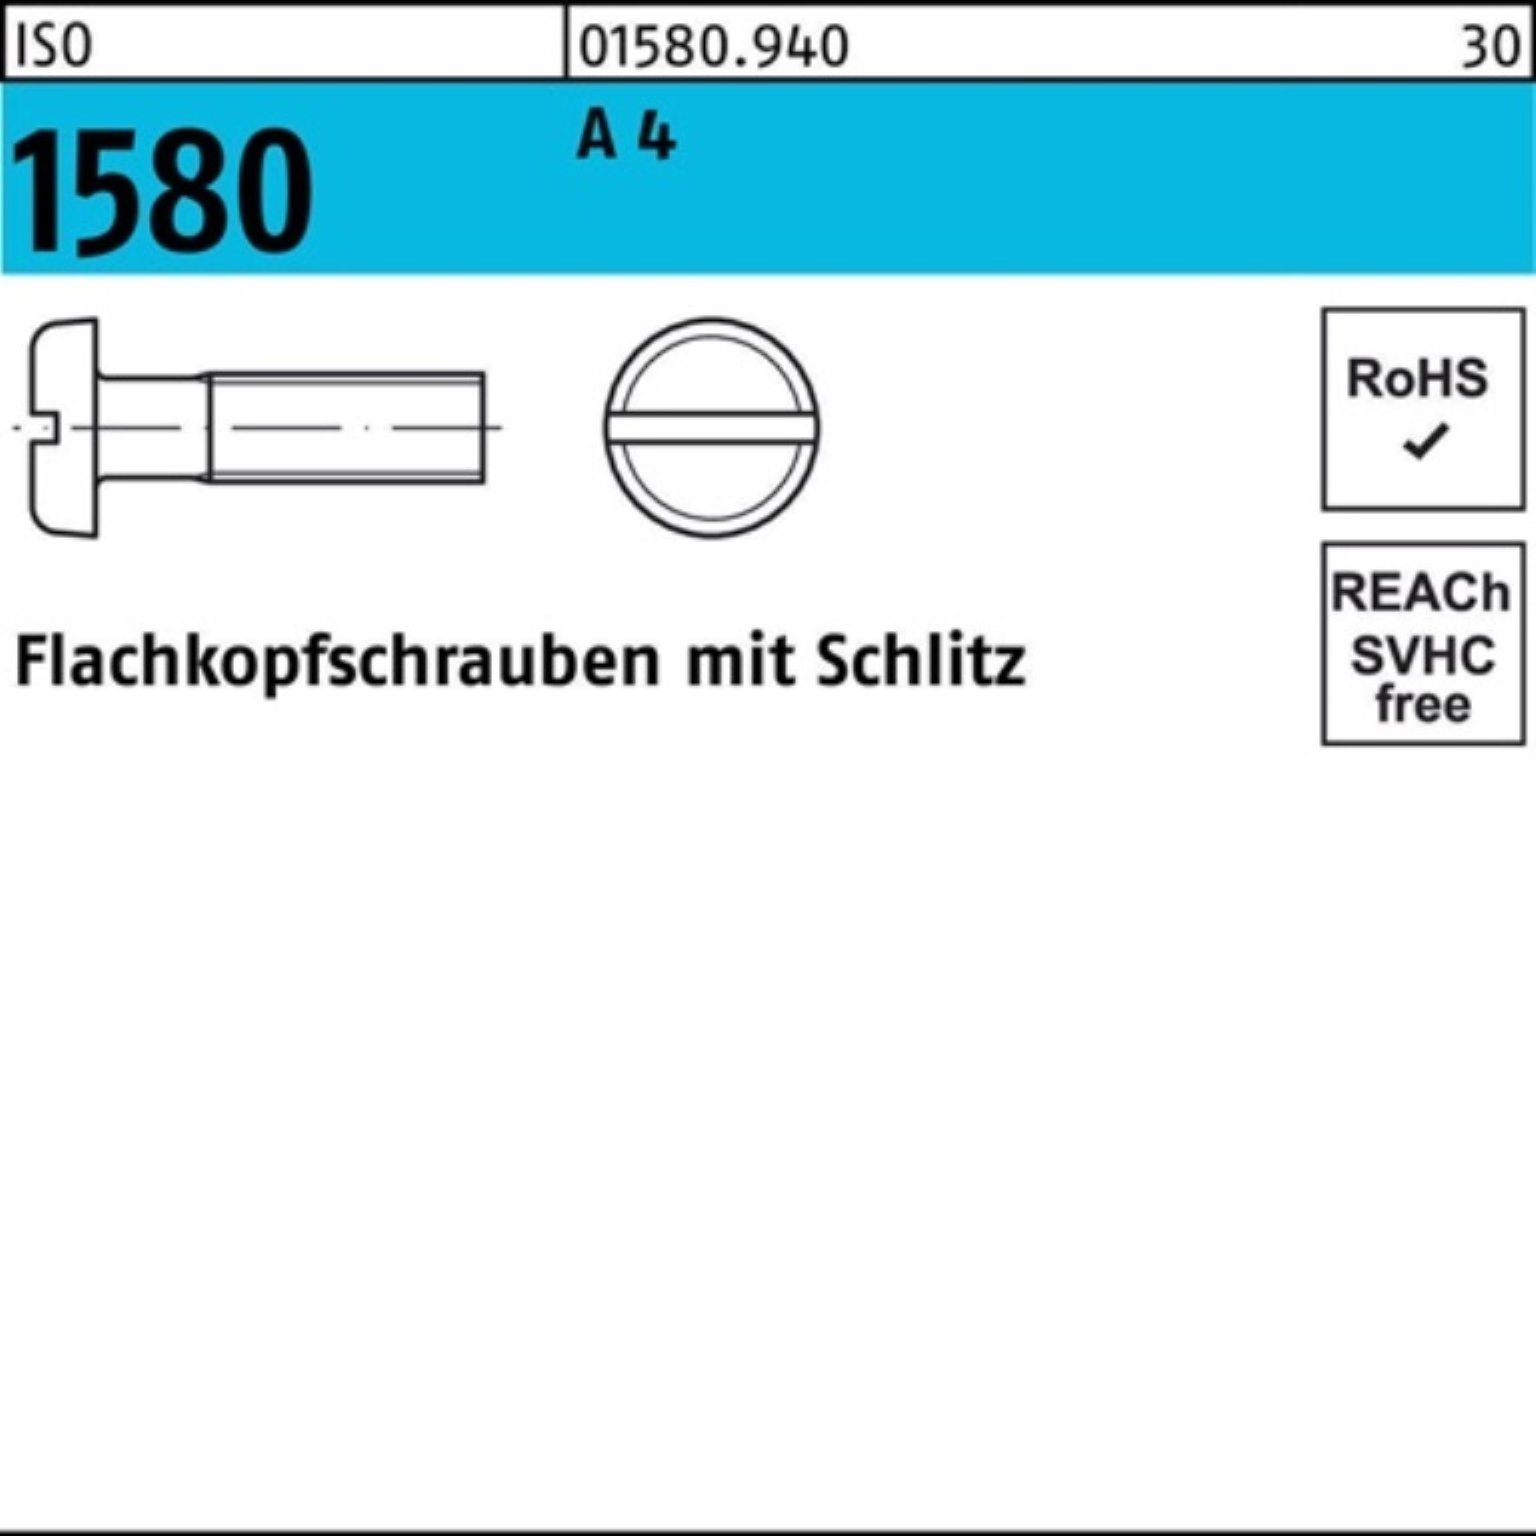 Pack M4x Reyher Flachkopfschraube 100 100er Schlitz 40 Schraube 1580 A ISO IS 4 Stück